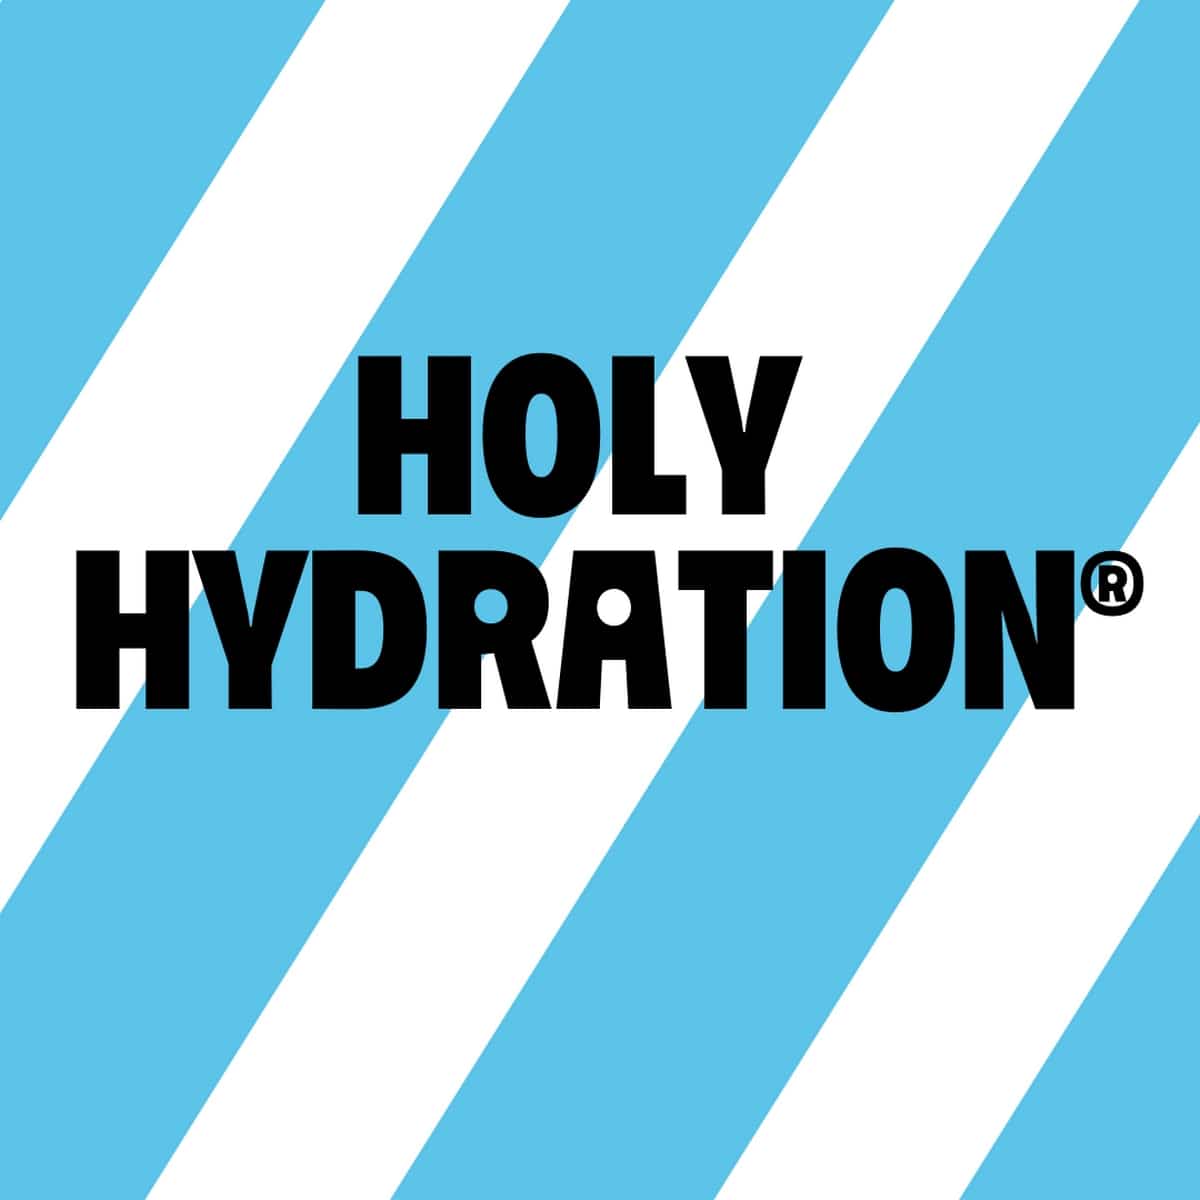 Logotipo de hidratación Holy